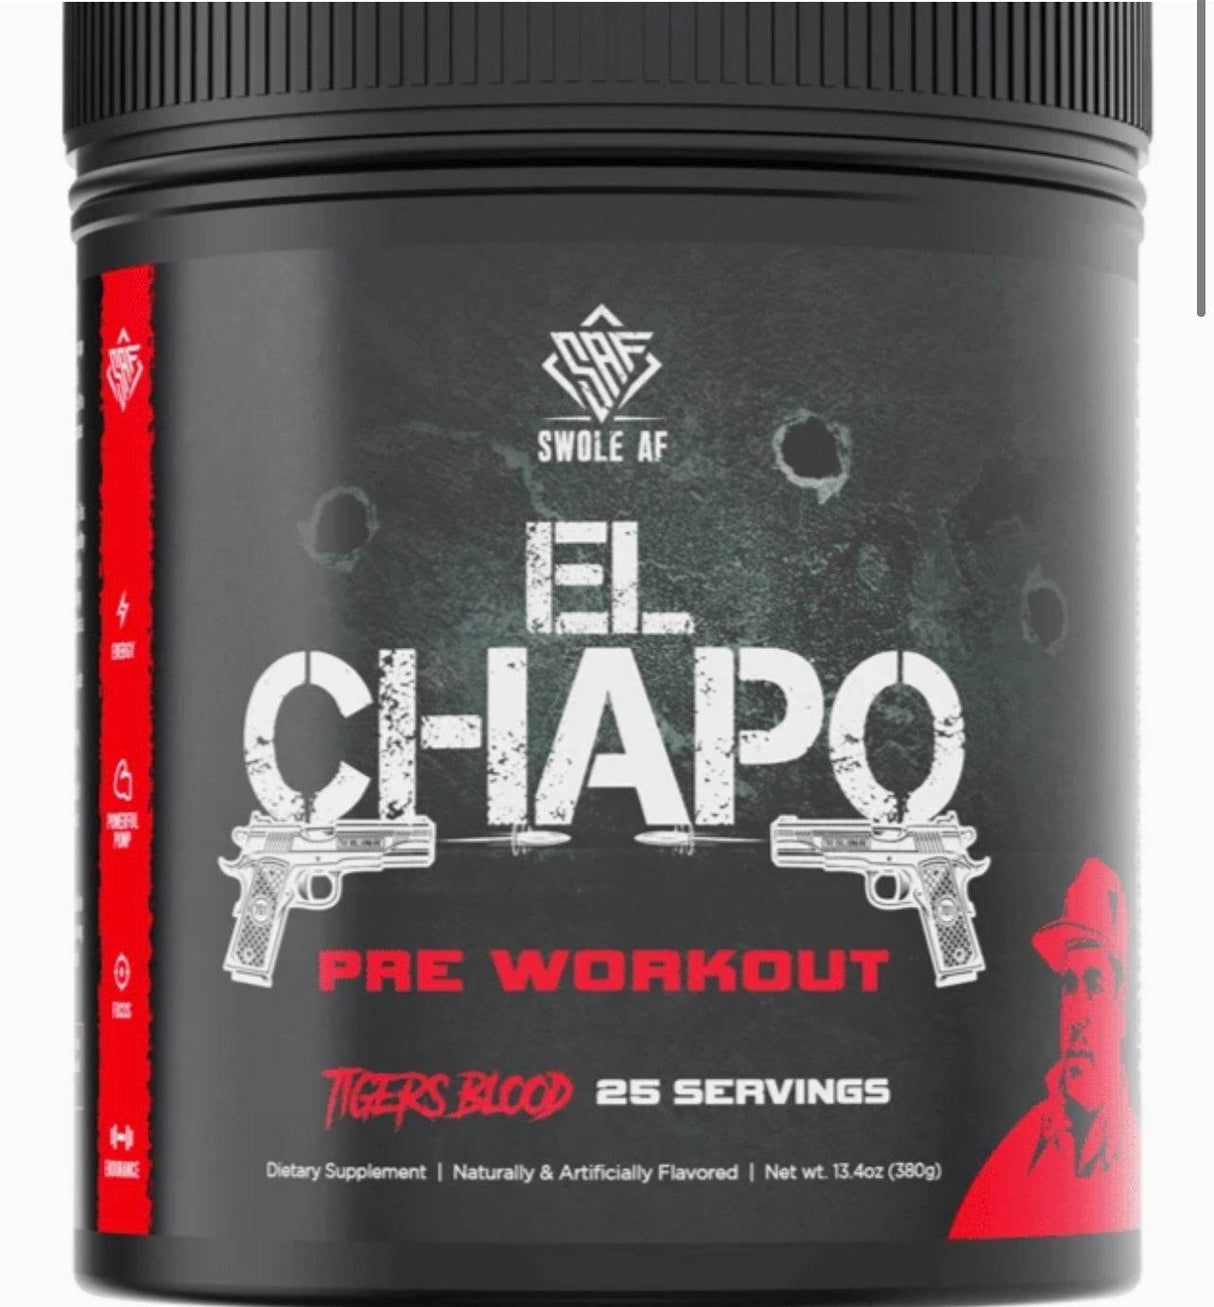 El Chapo - Swole Af - Prime Sports Nutrition